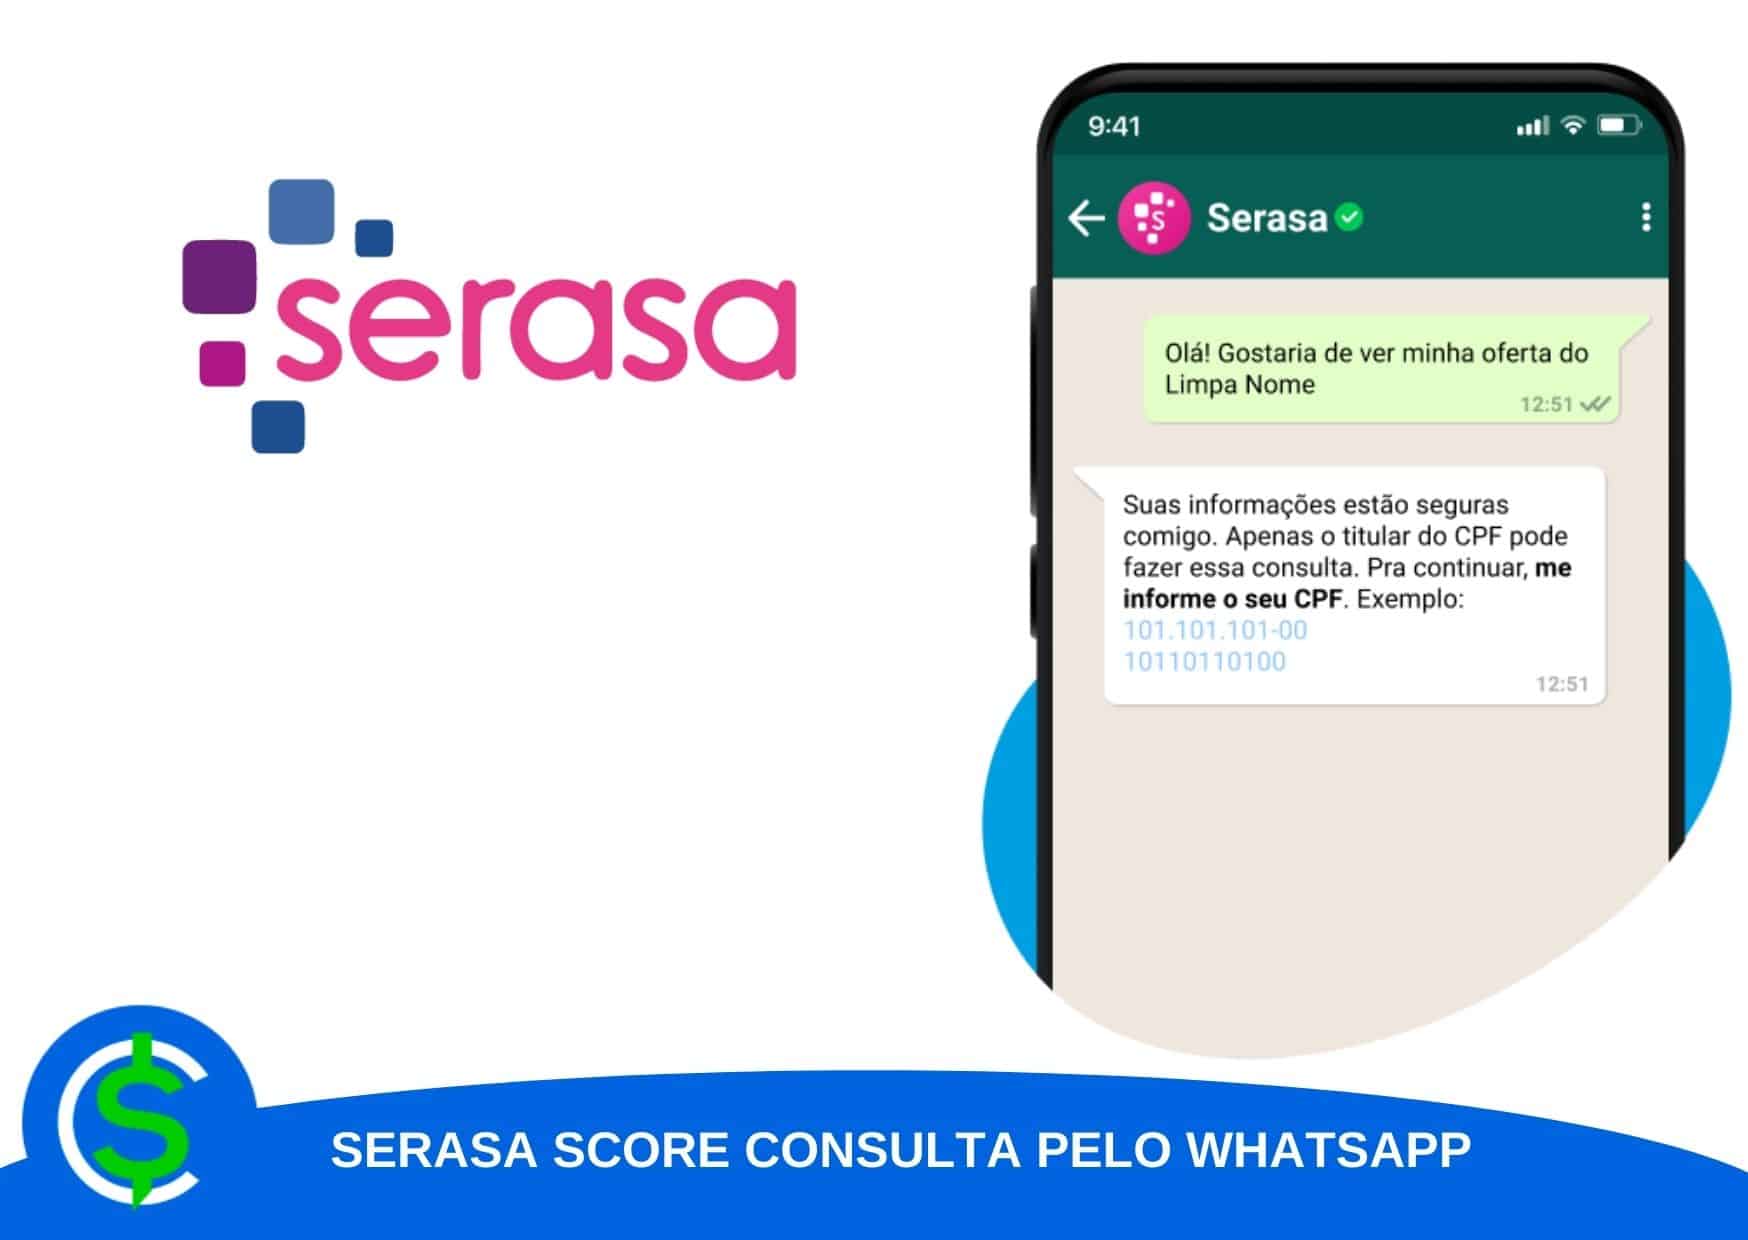 Serasa score consulta whatsapp